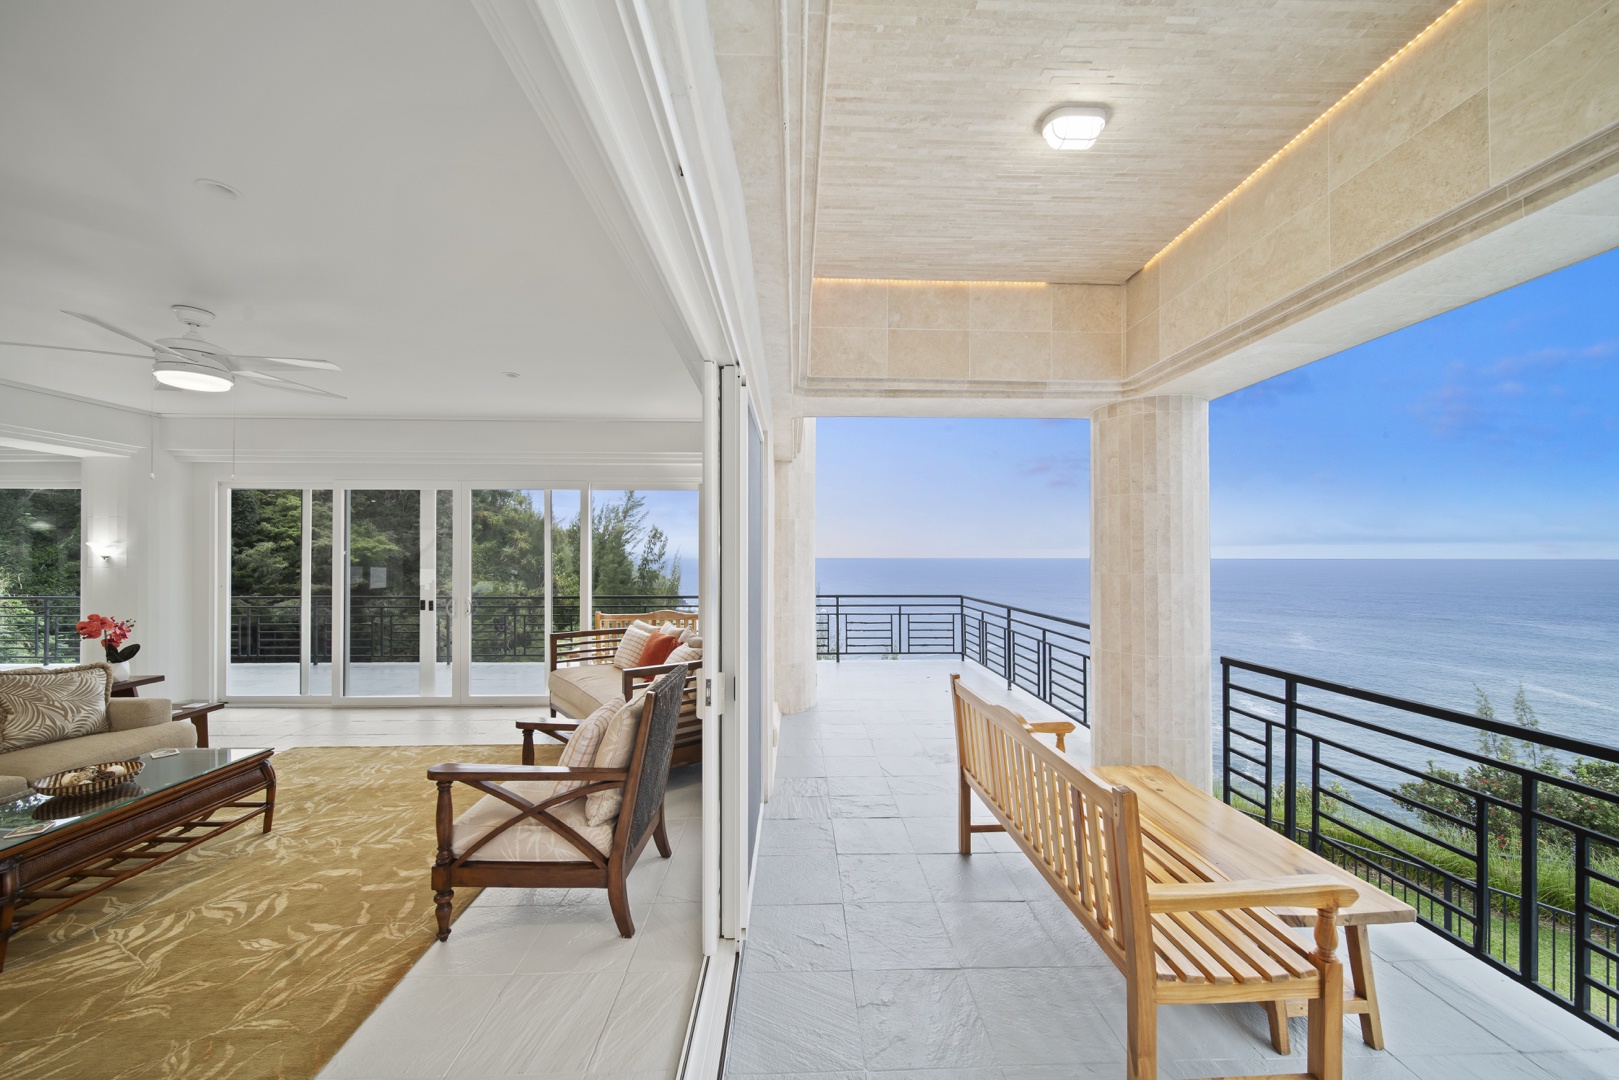 Ninole Vacation Rentals, Waterfalling Estate - Indoor/outdoor living in true island style!